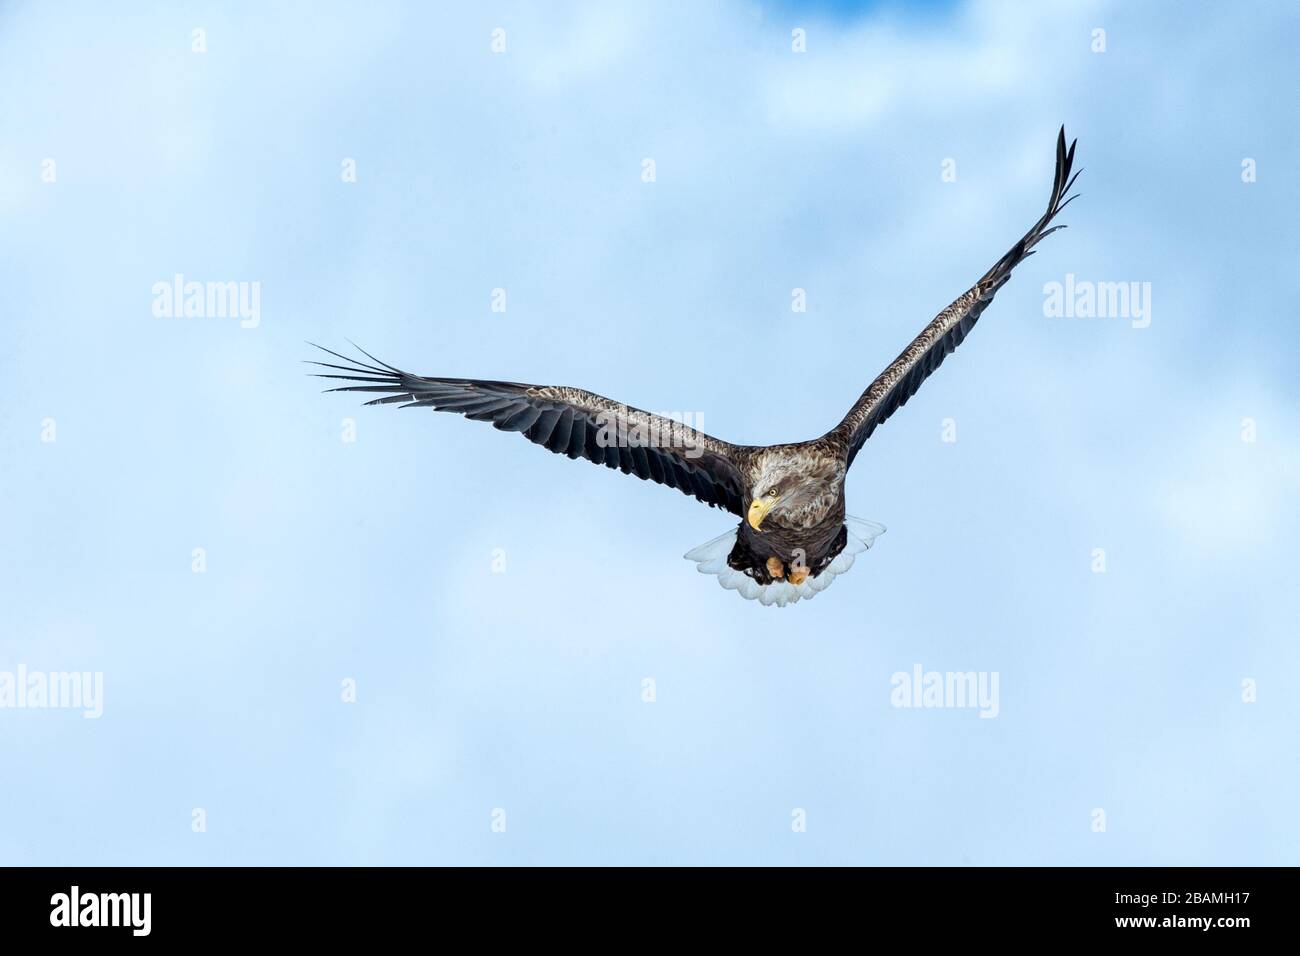 Aquila dalla coda bianca in volo, aquila che vola contro il cielo blu con le nuvole a Hokkaido, Giappone, silhouette di aquila all'alba, maestosa aquila di mare, wallpa Foto Stock